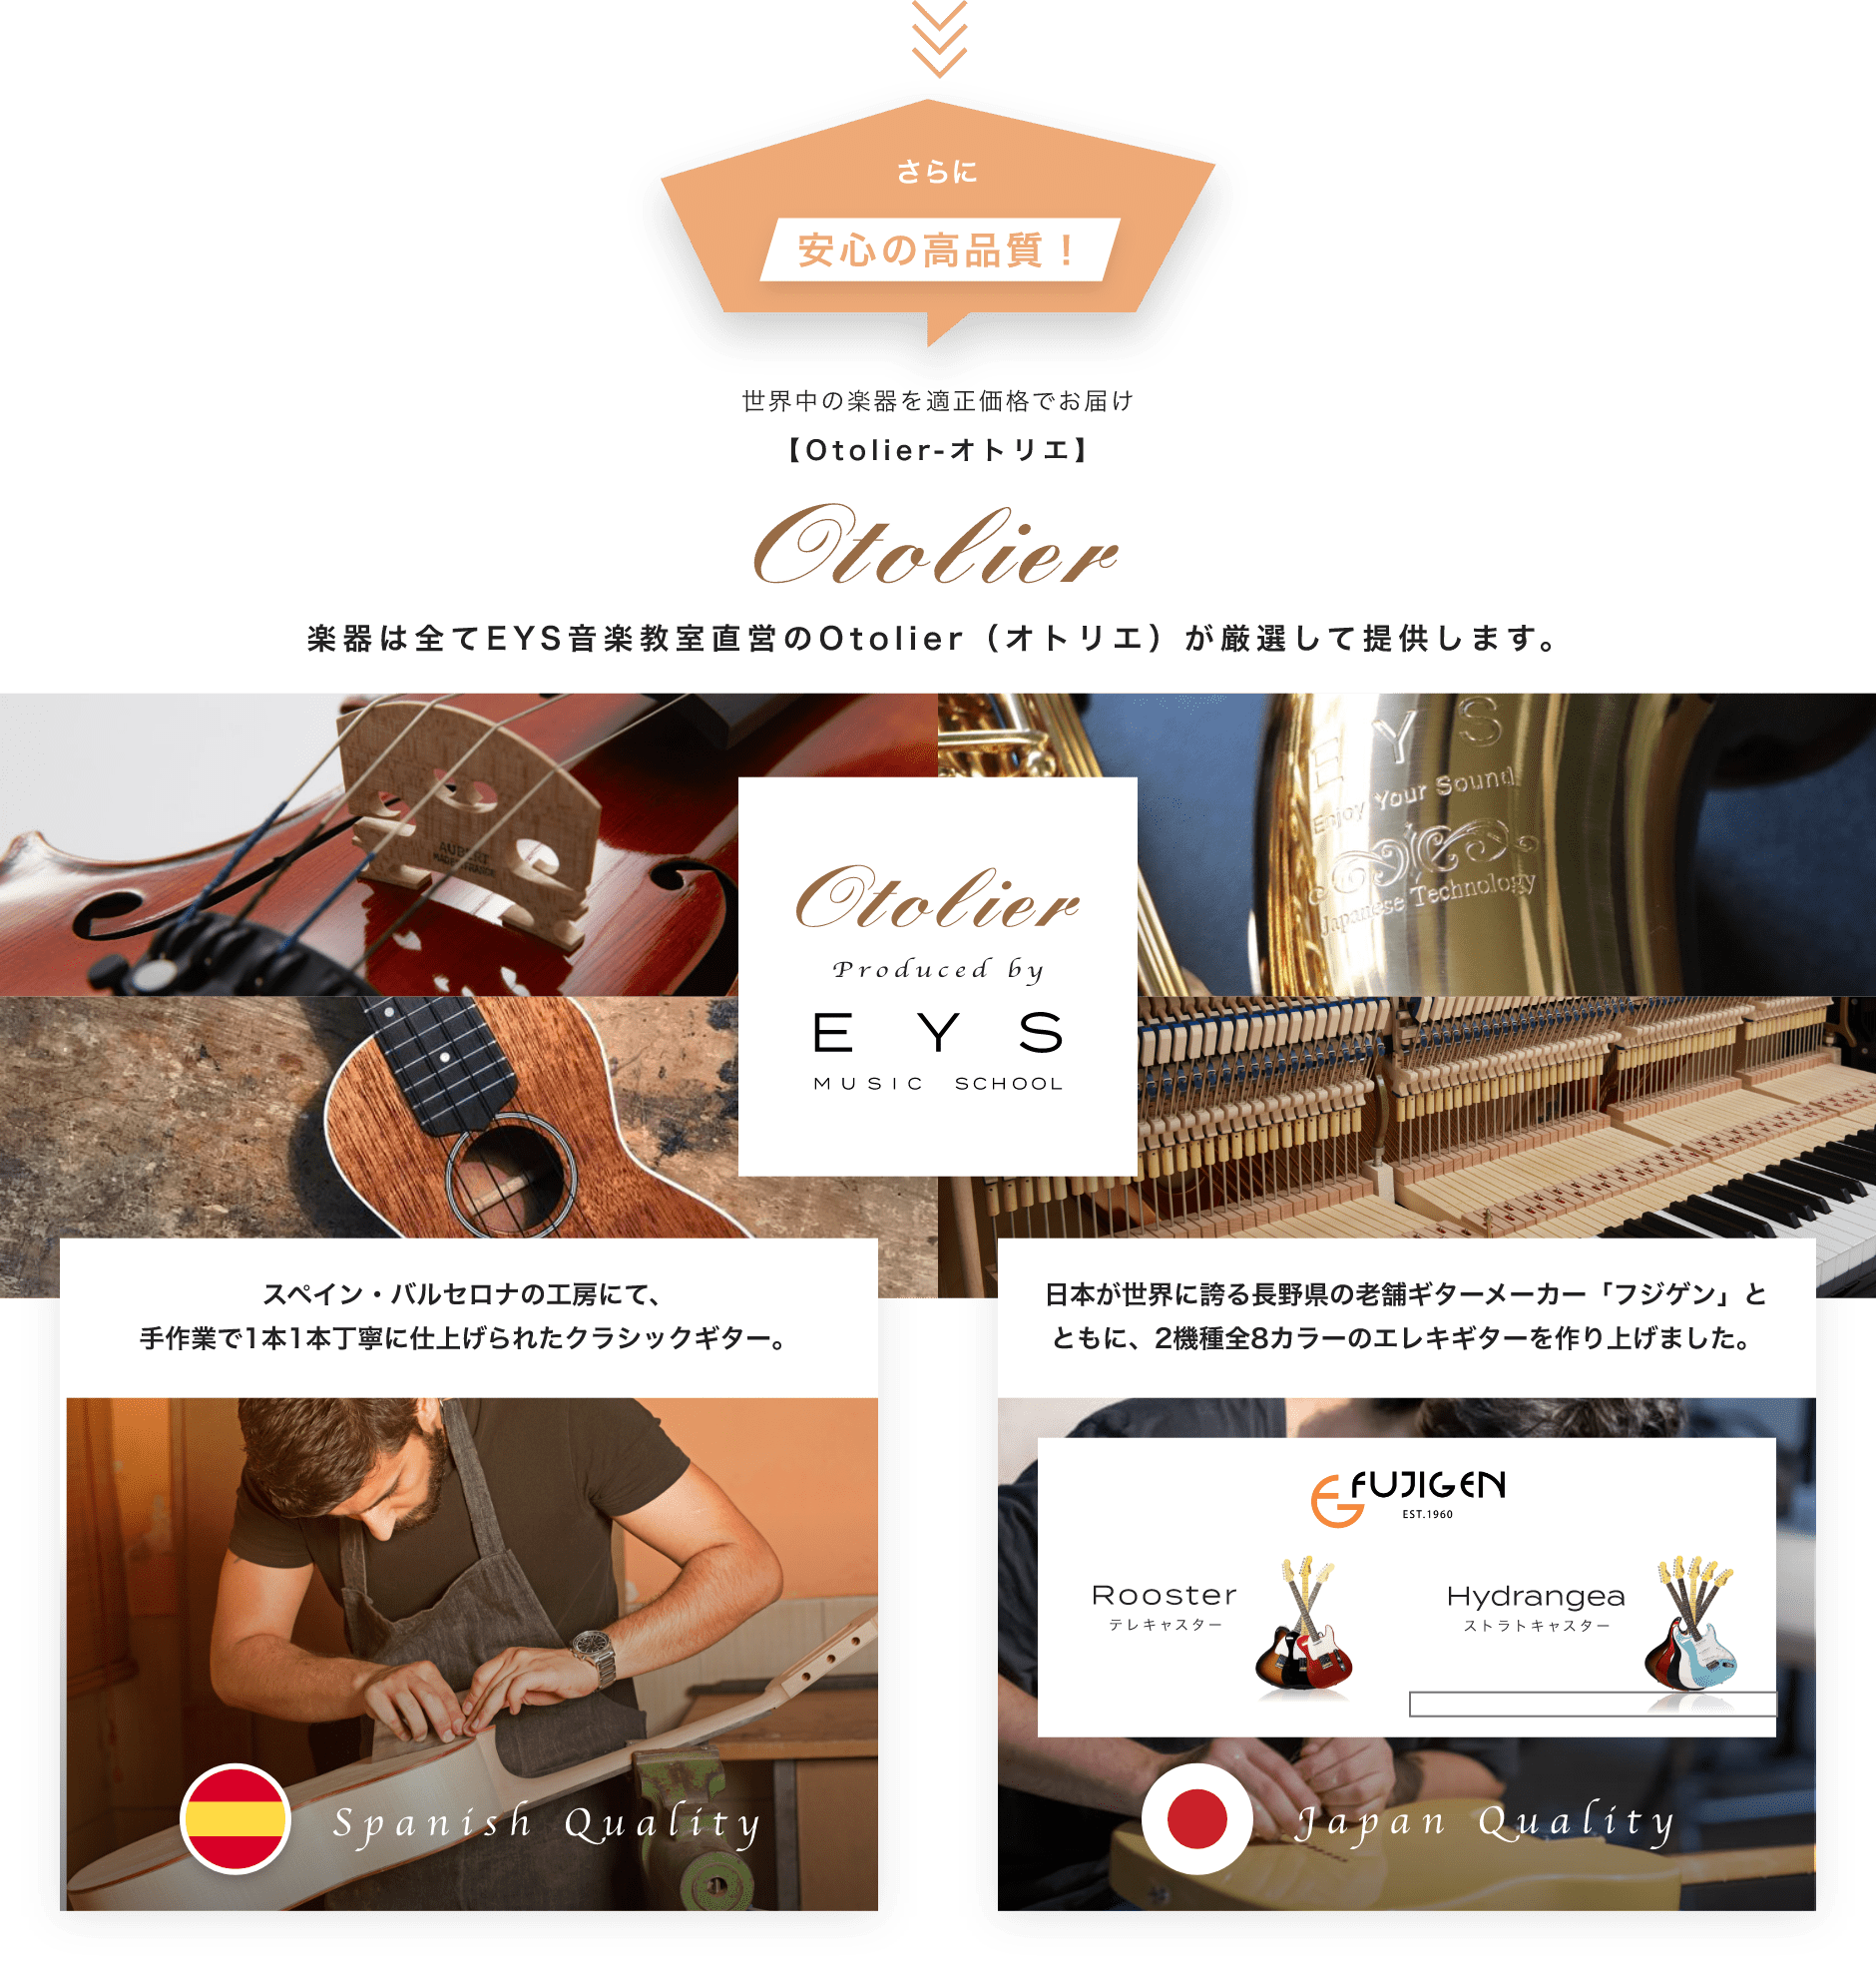 さらに安心の高品質 世界中の楽器を適正価格でお届け 楽器は全てEYS音楽教室直営のOtolier（オトリエ）が厳選して提供します。 スペイン・バルセロナの工房にて、手作業で1本1本丁寧に仕上げられたクラシックギター。 日本が世界に誇る長野県の老舗ギターメーカー「フジゲン」とともに、2機種全8カラーのエレキギターを作り上げました。